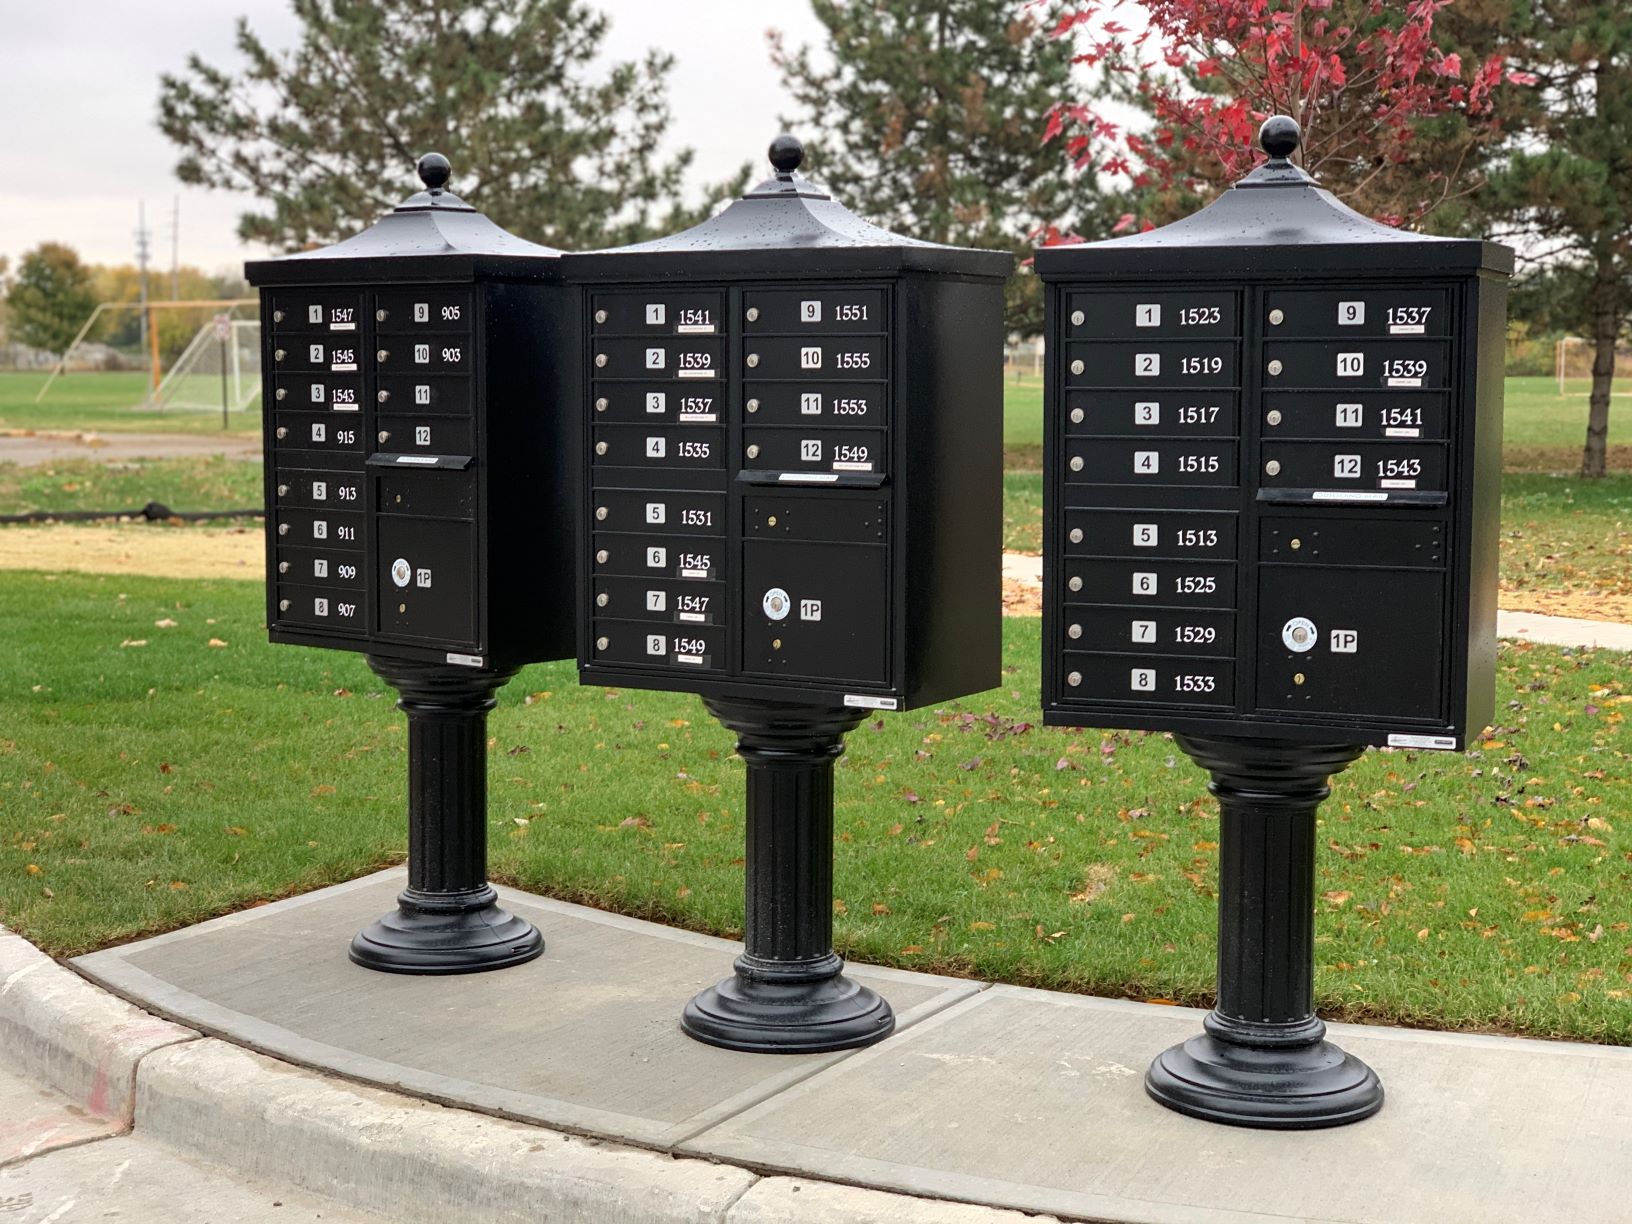 community mailbox instalation brighton mi